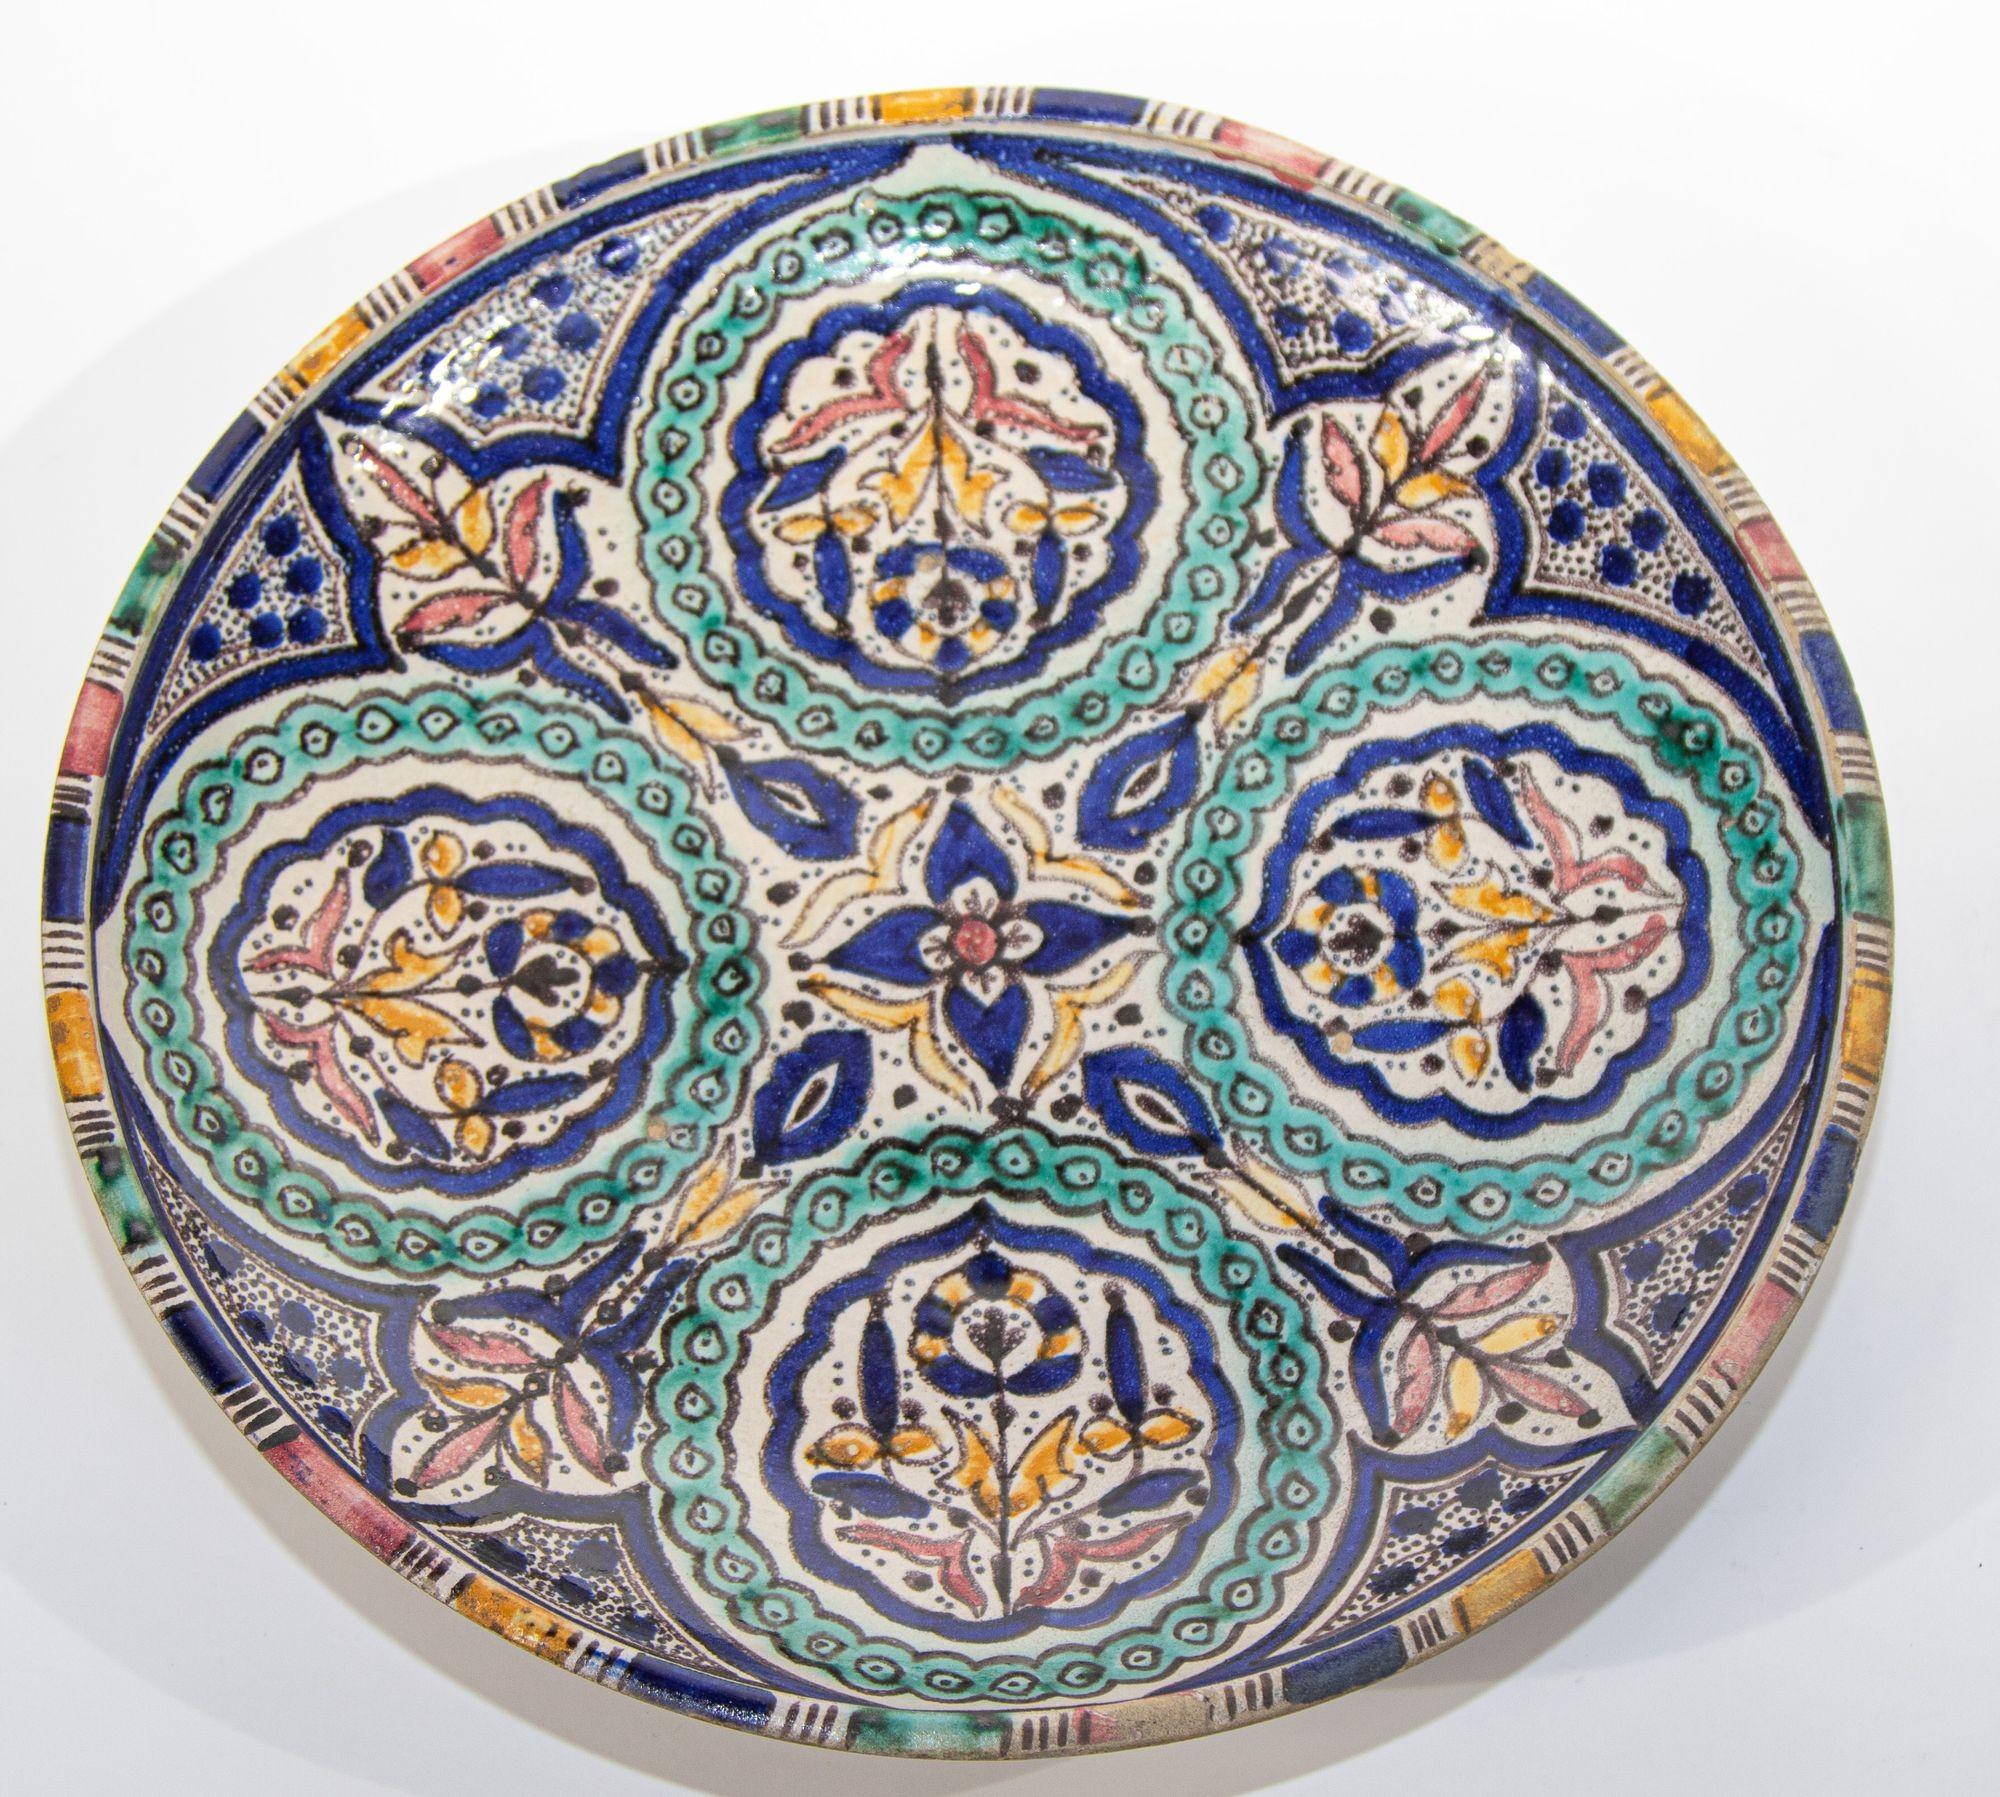 Antike handbemalte und handgefertigte marokkanische Keramikschale oder dekorativer Wandteller,
Große marokkanische Keramikschüssel, die in Fes von Kunsthandwerkern hergestellt wird. Handbemalter Teller aus maurischer Keramik aus Fes,